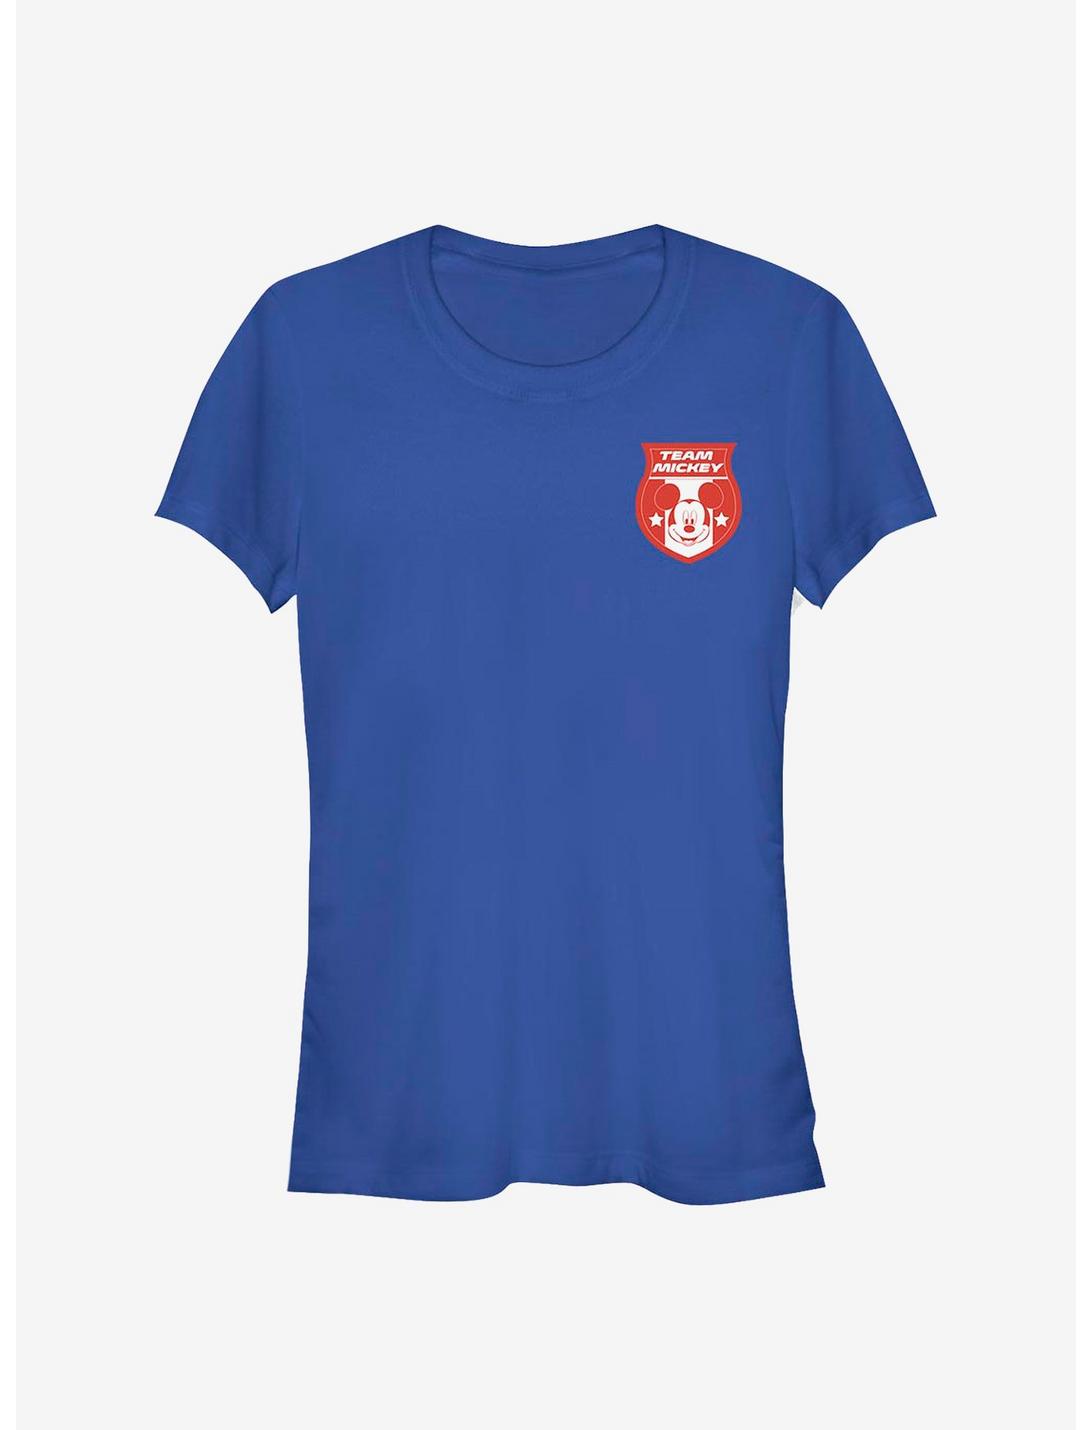 Disney Mickey Mouse Canada Badge Girls T-Shirt, ROYAL, hi-res